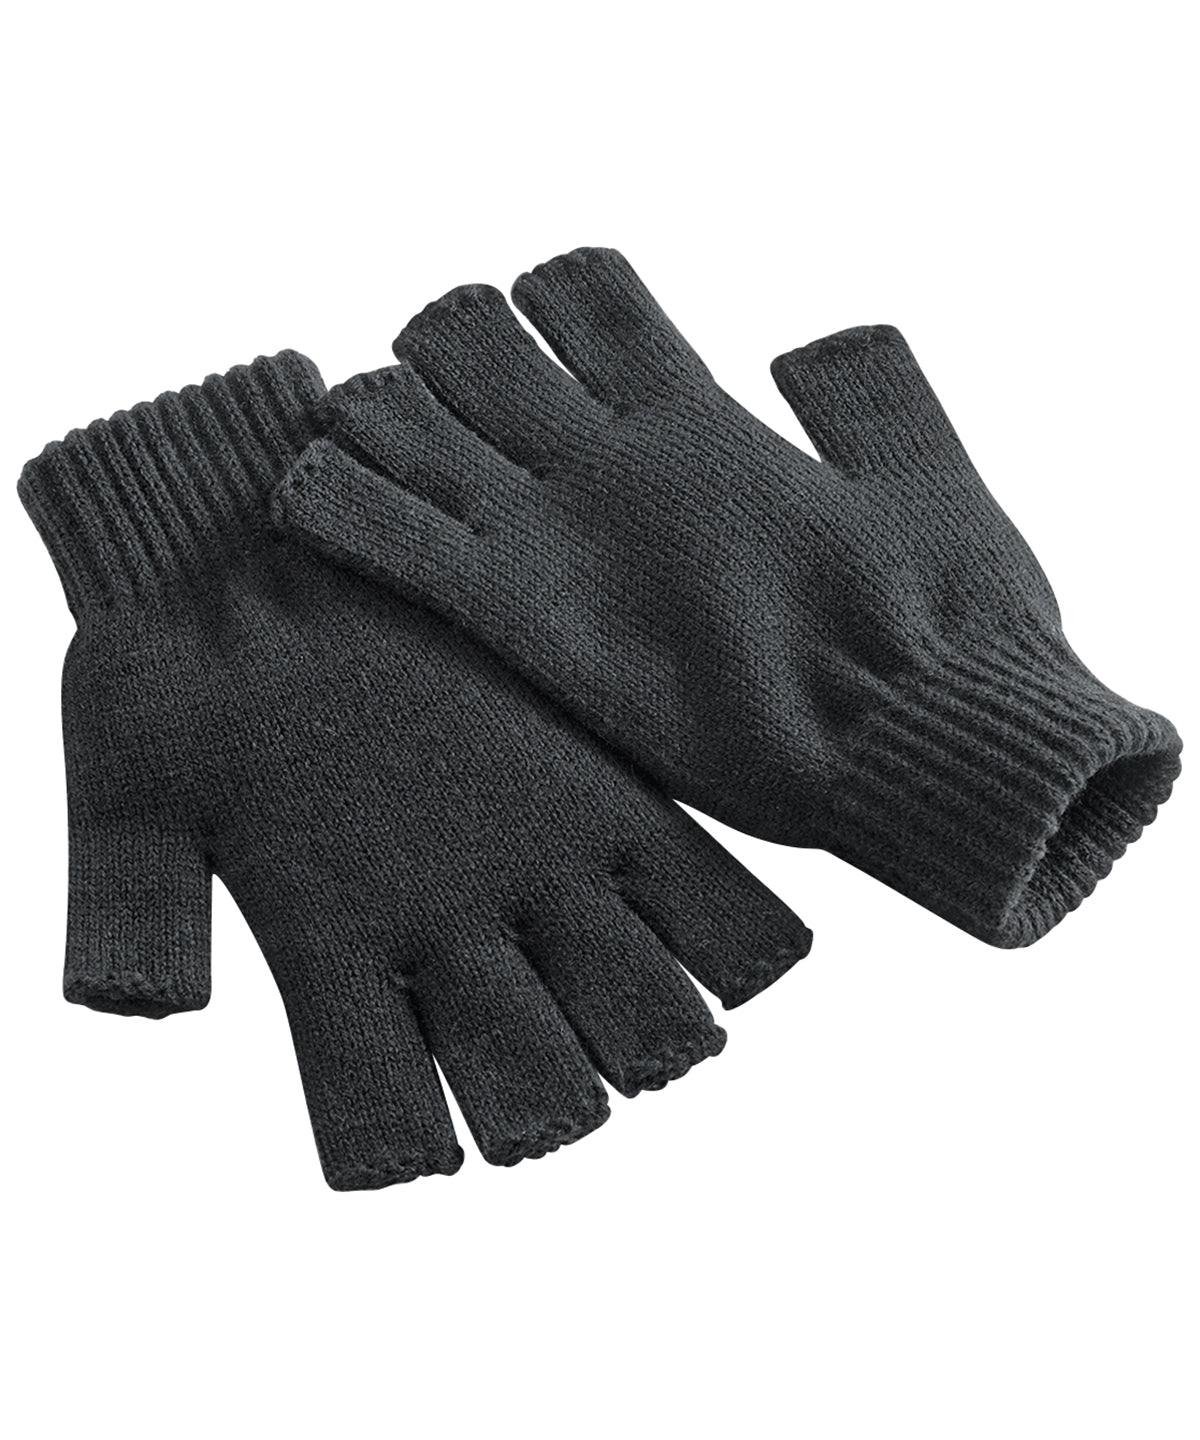 Personalised Gloves - Black Beechfield Fingerless gloves